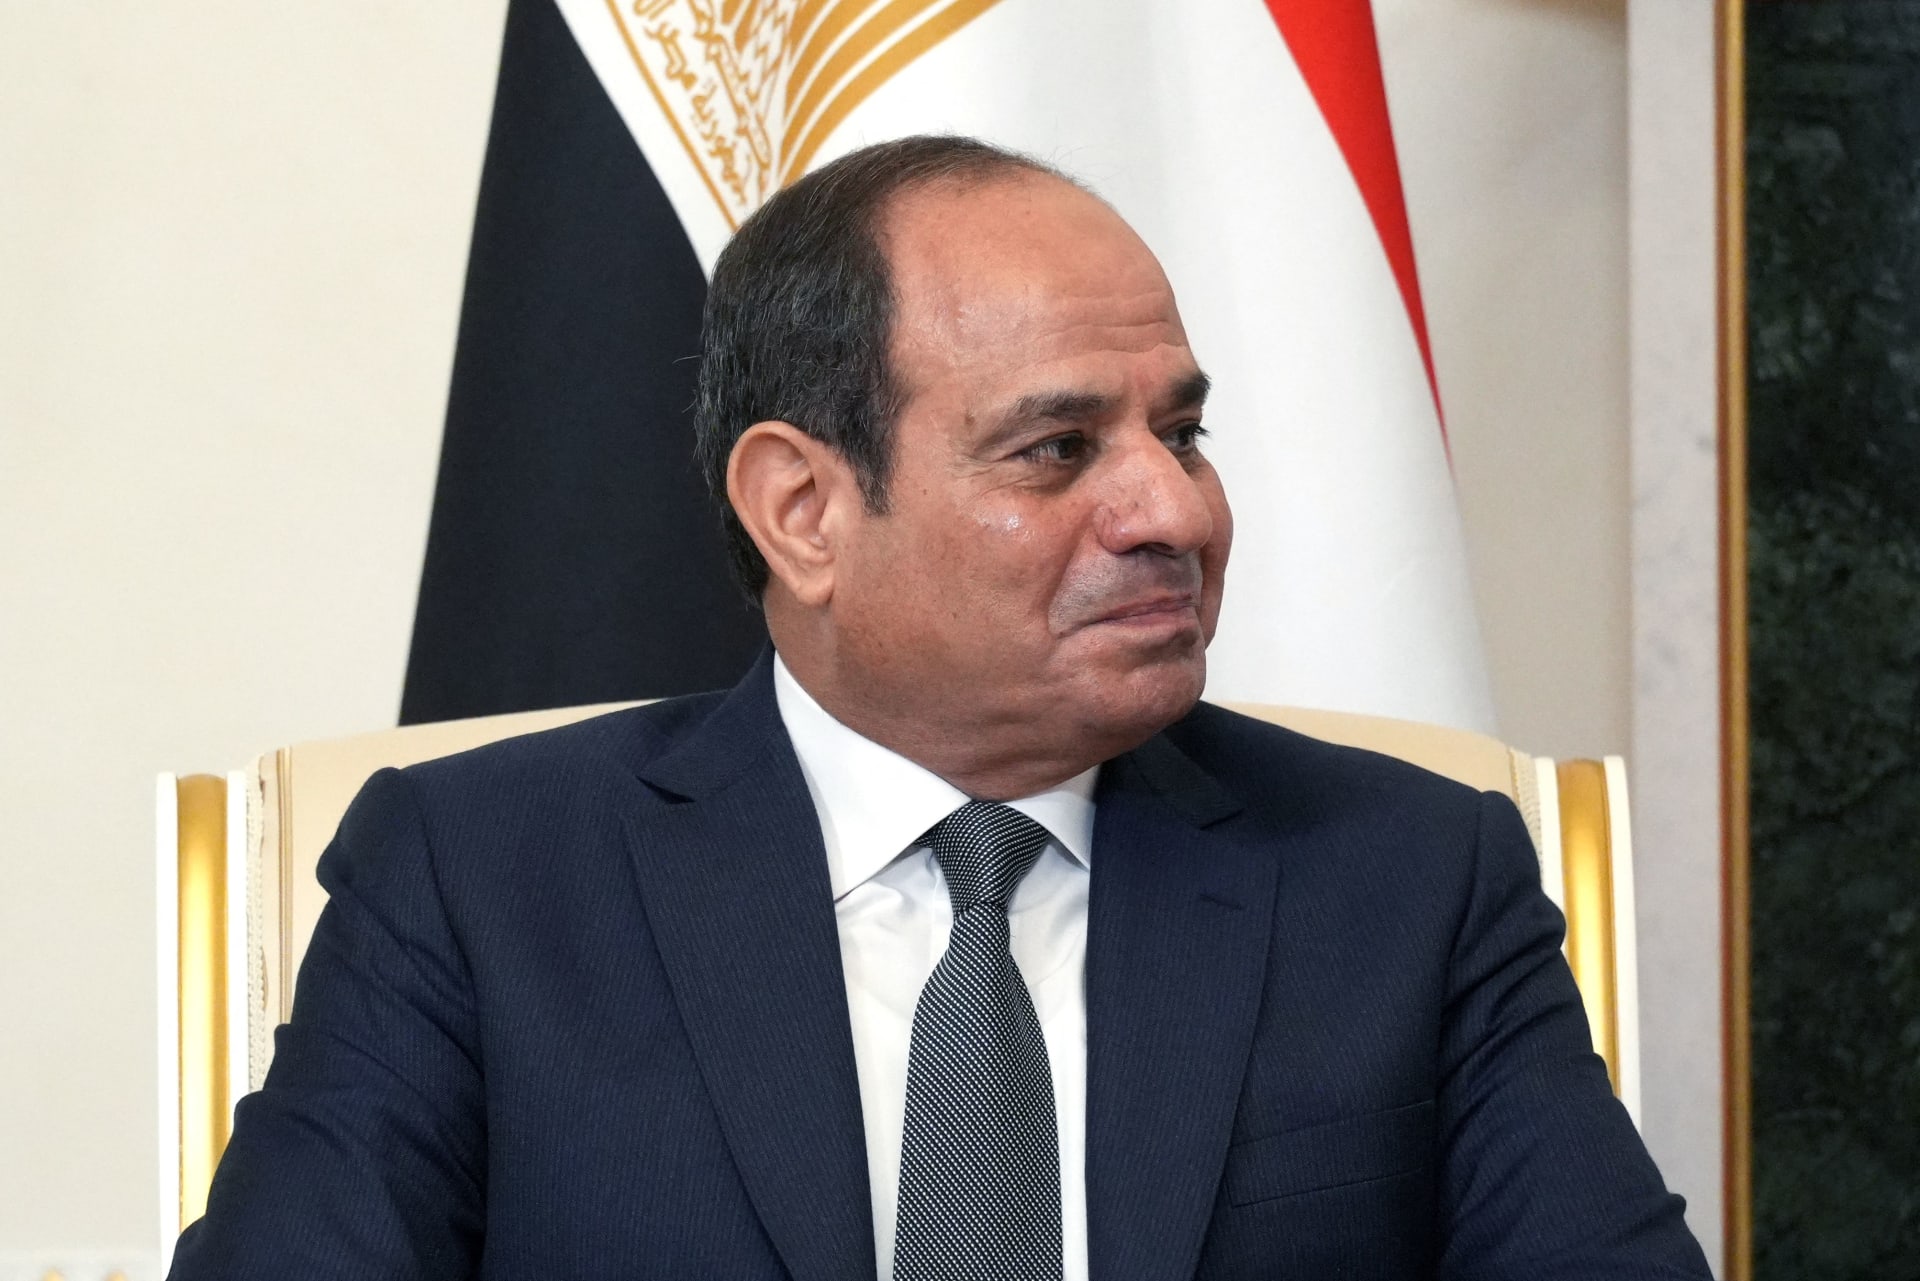  مصر.. مؤتمرات في المحافظات لحشد الدعم للسيسي قبل انتخابات الرئاسة